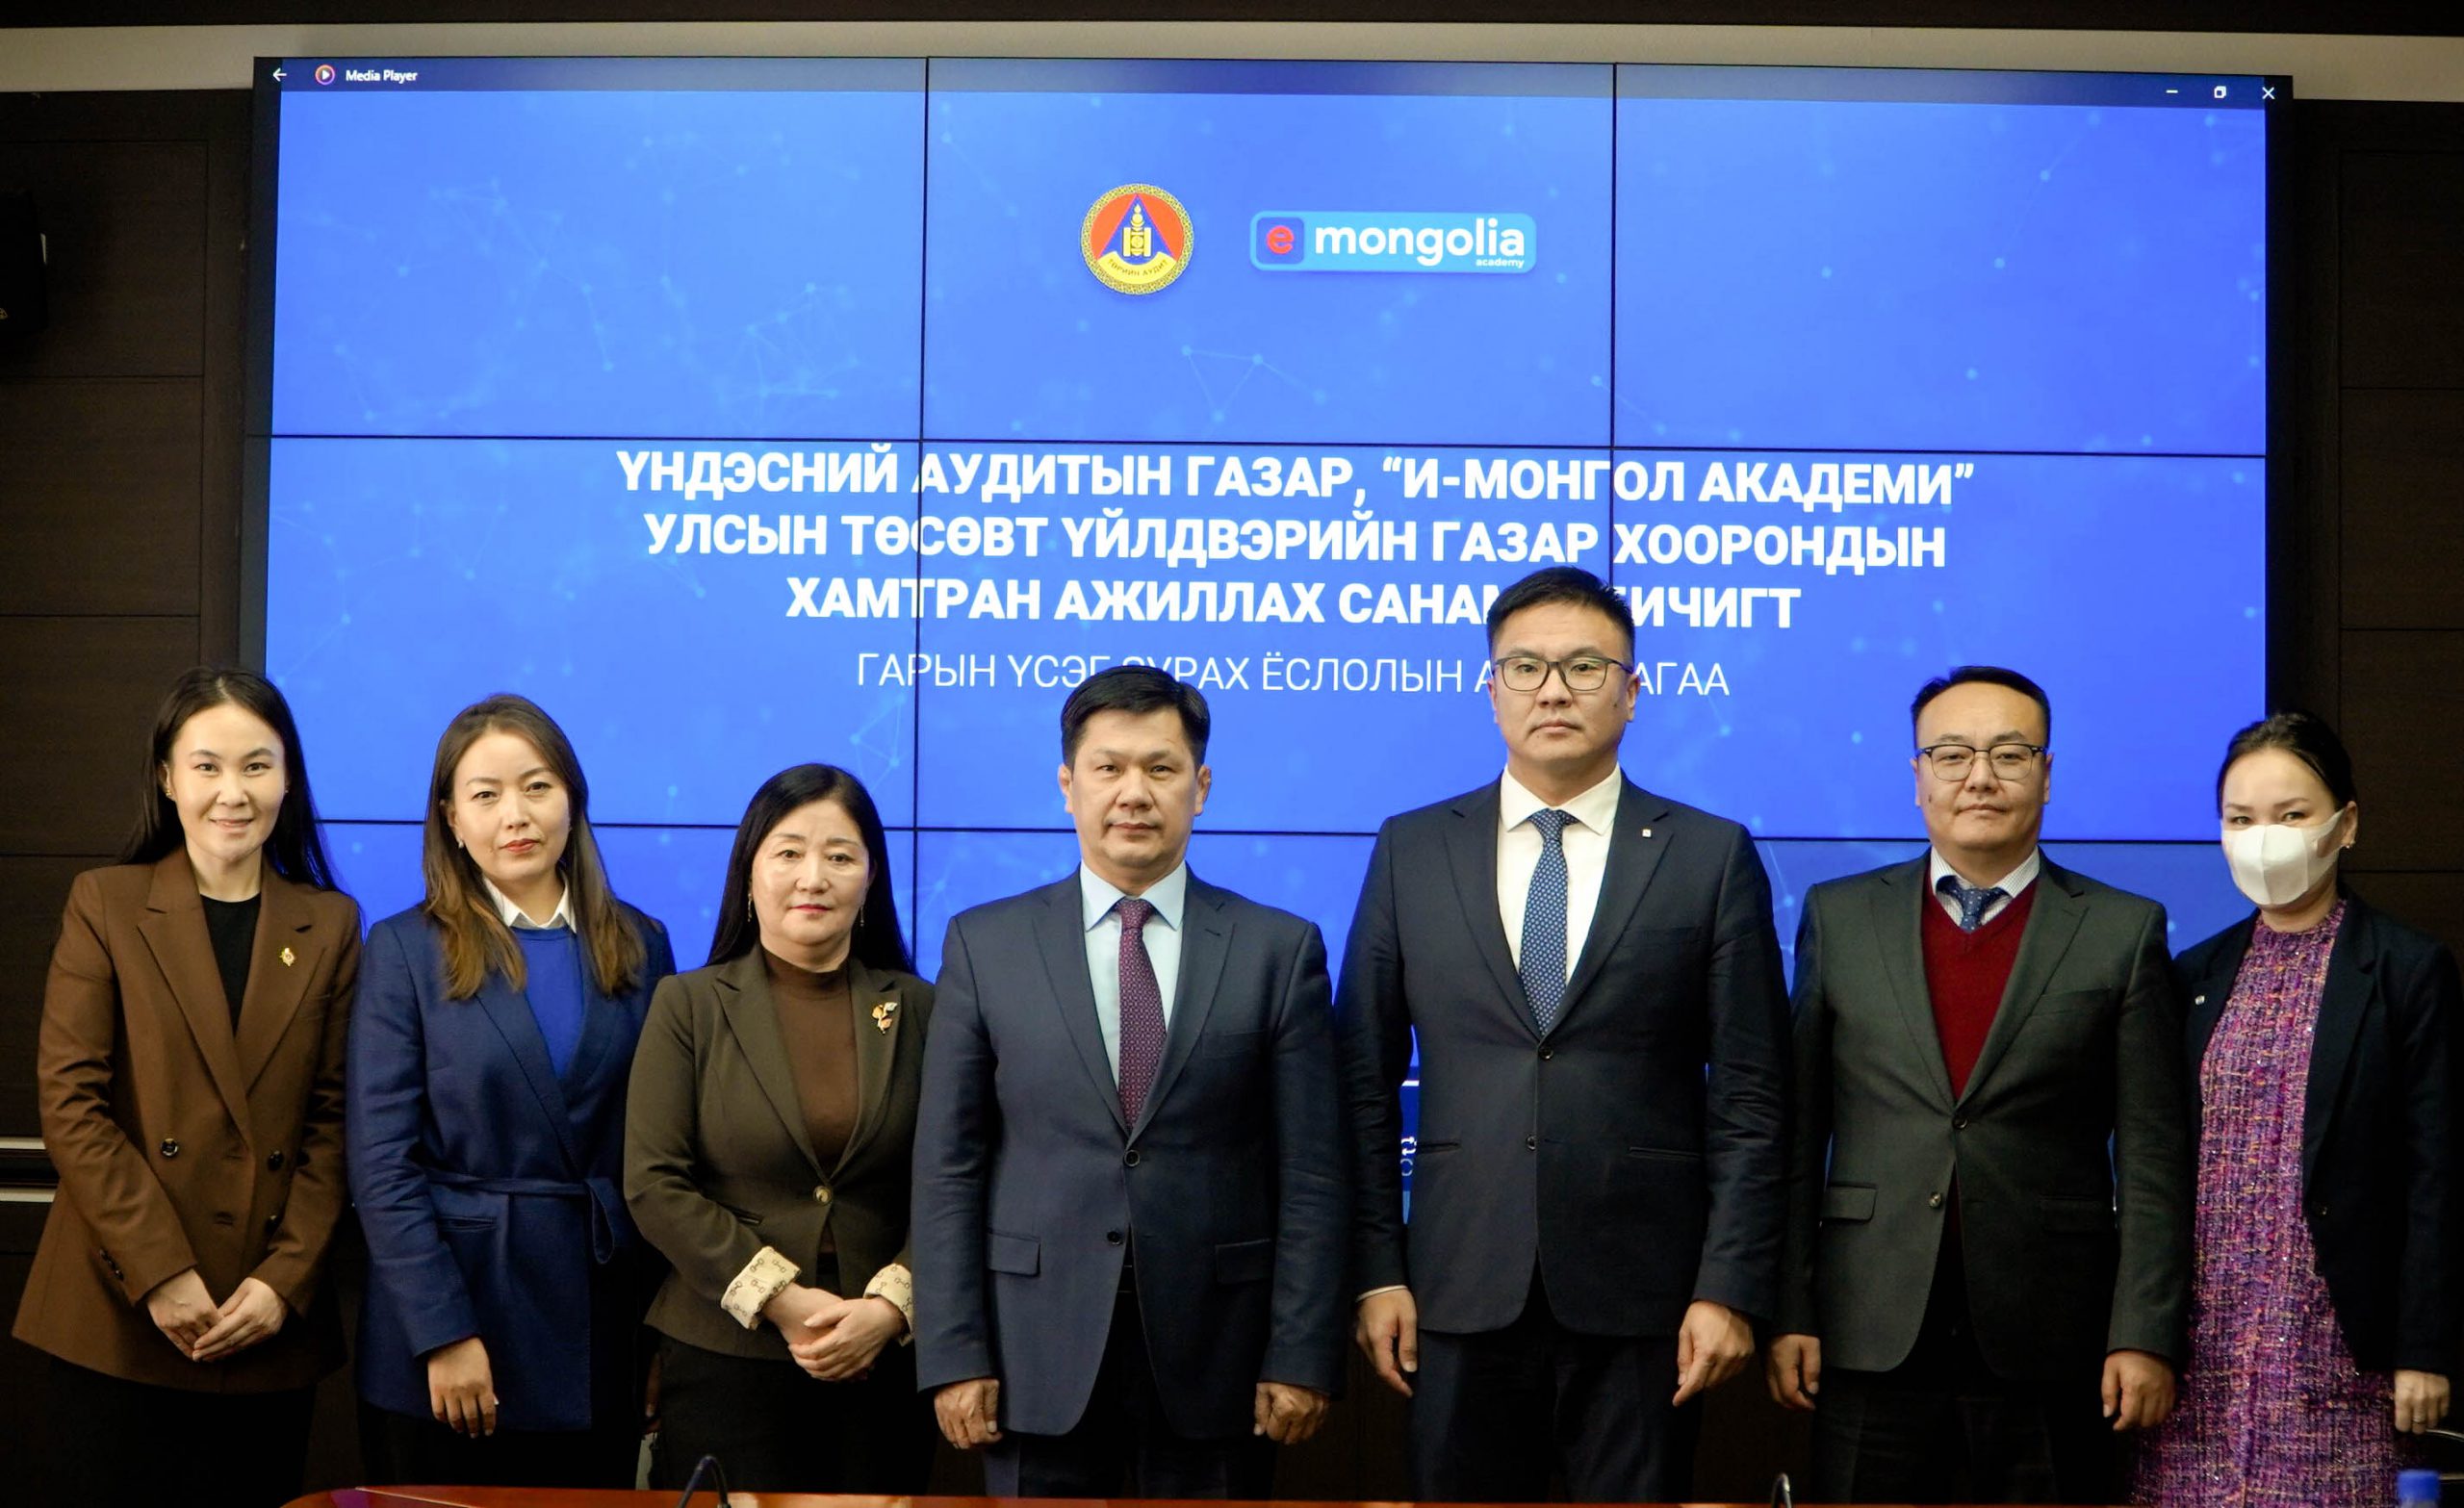 Үндэсний аудитын газар “И-Монгол академи” хооронд хамтран ажиллах санамж бичиг байгууллаа